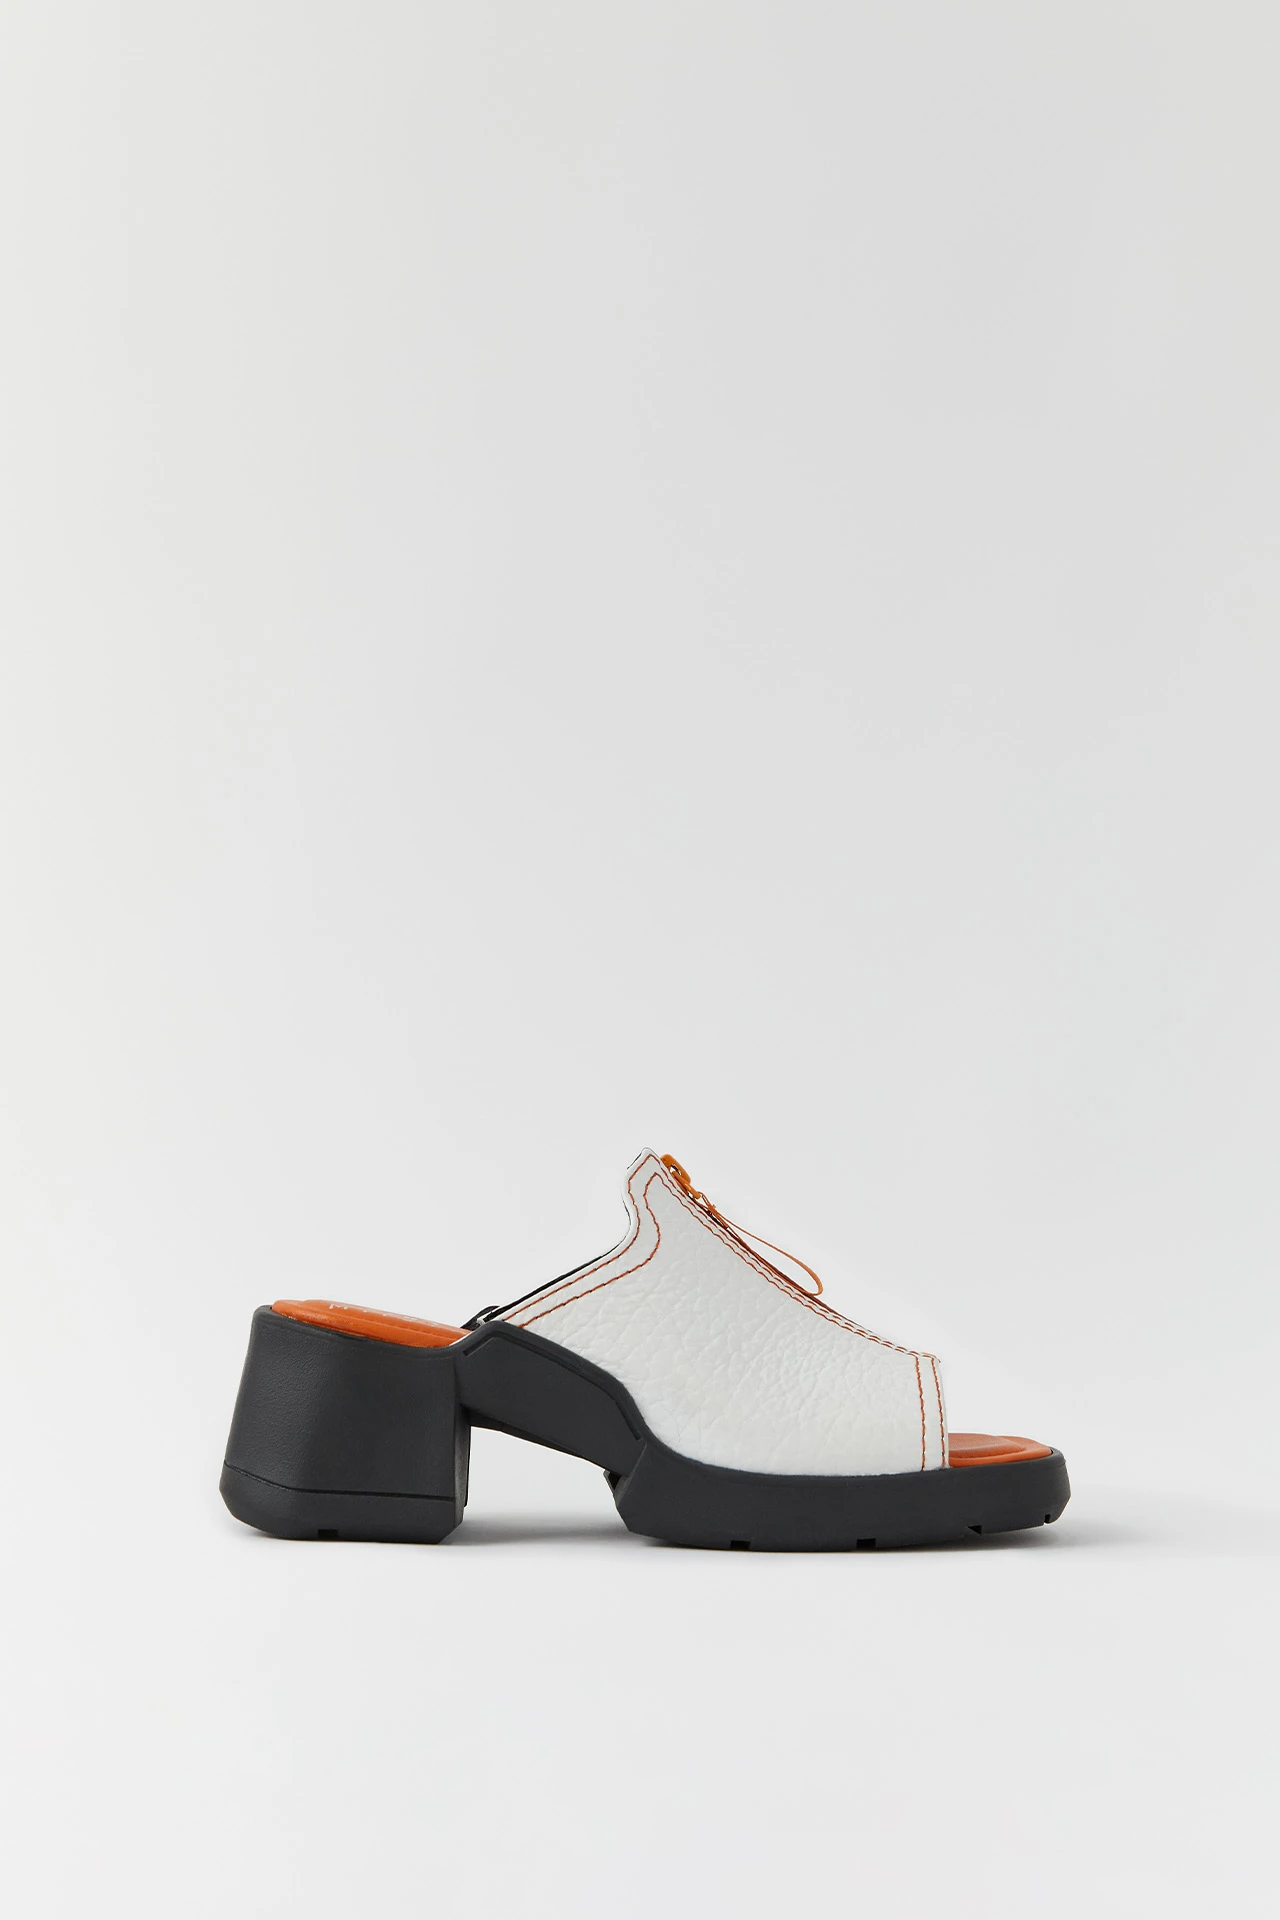 E8-bertie-white-sandals-01